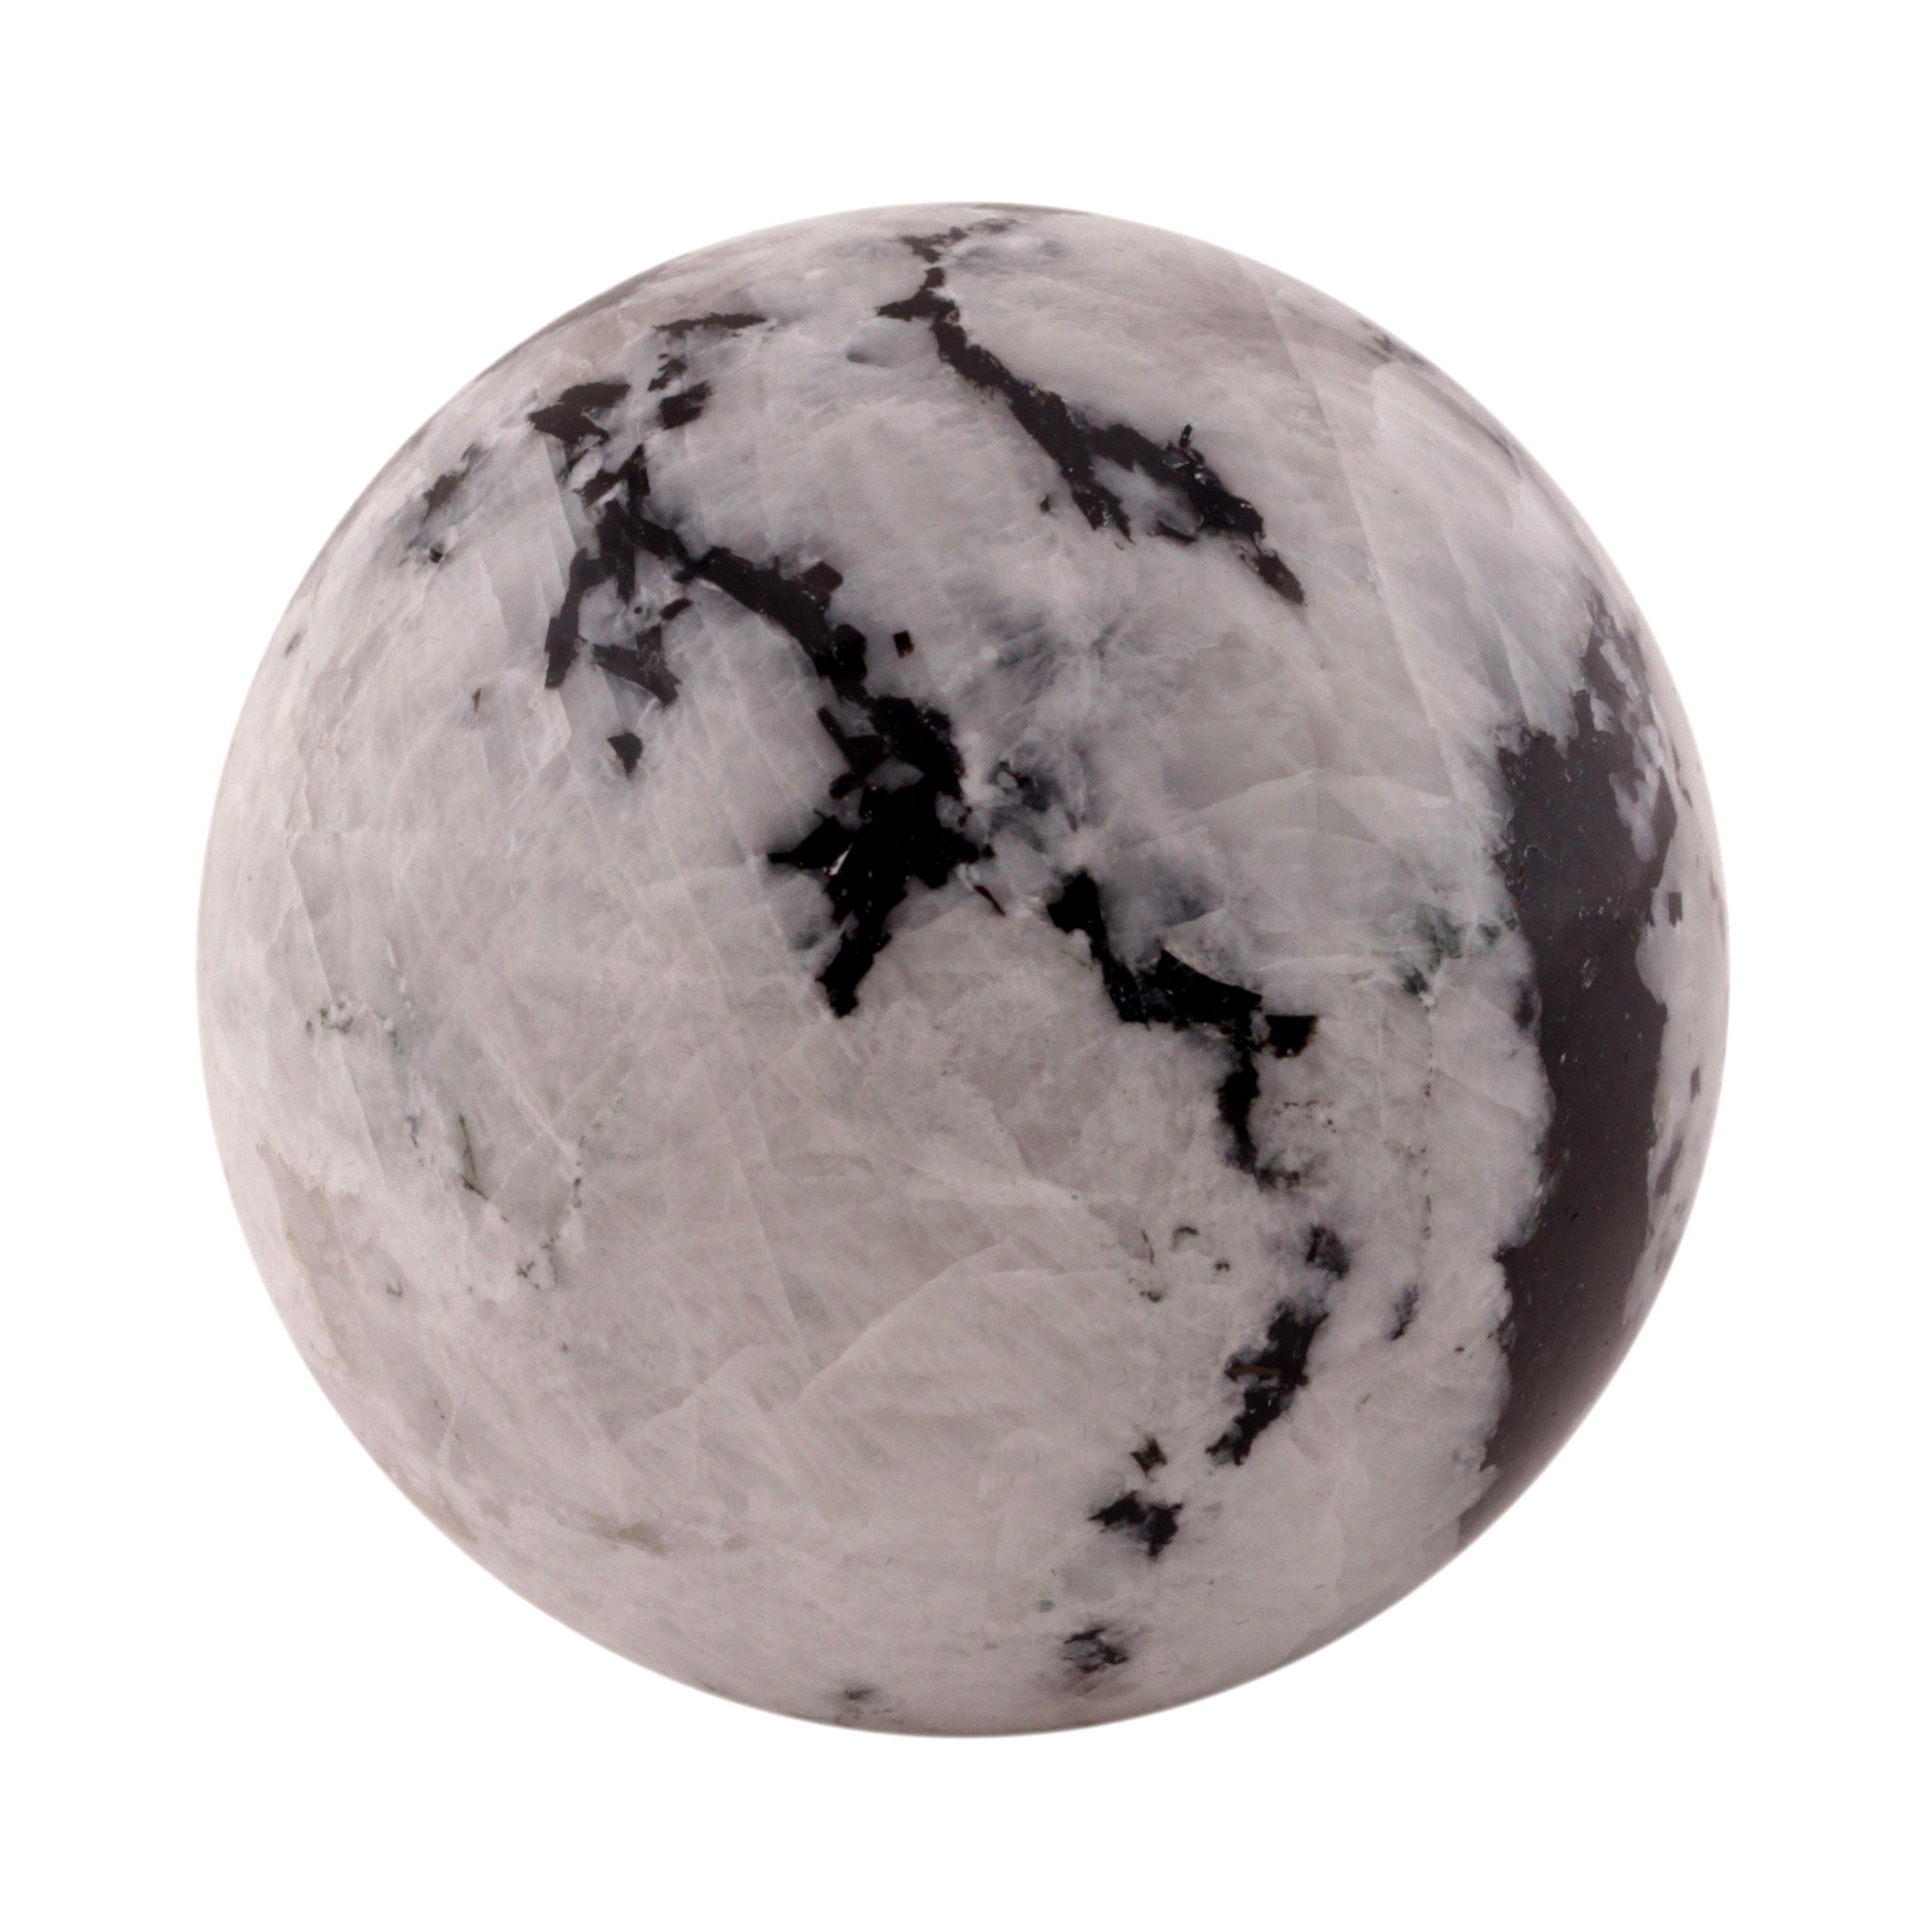 Healing Crystals - Rainbow Moonstone Sphere 1 Kg Lot